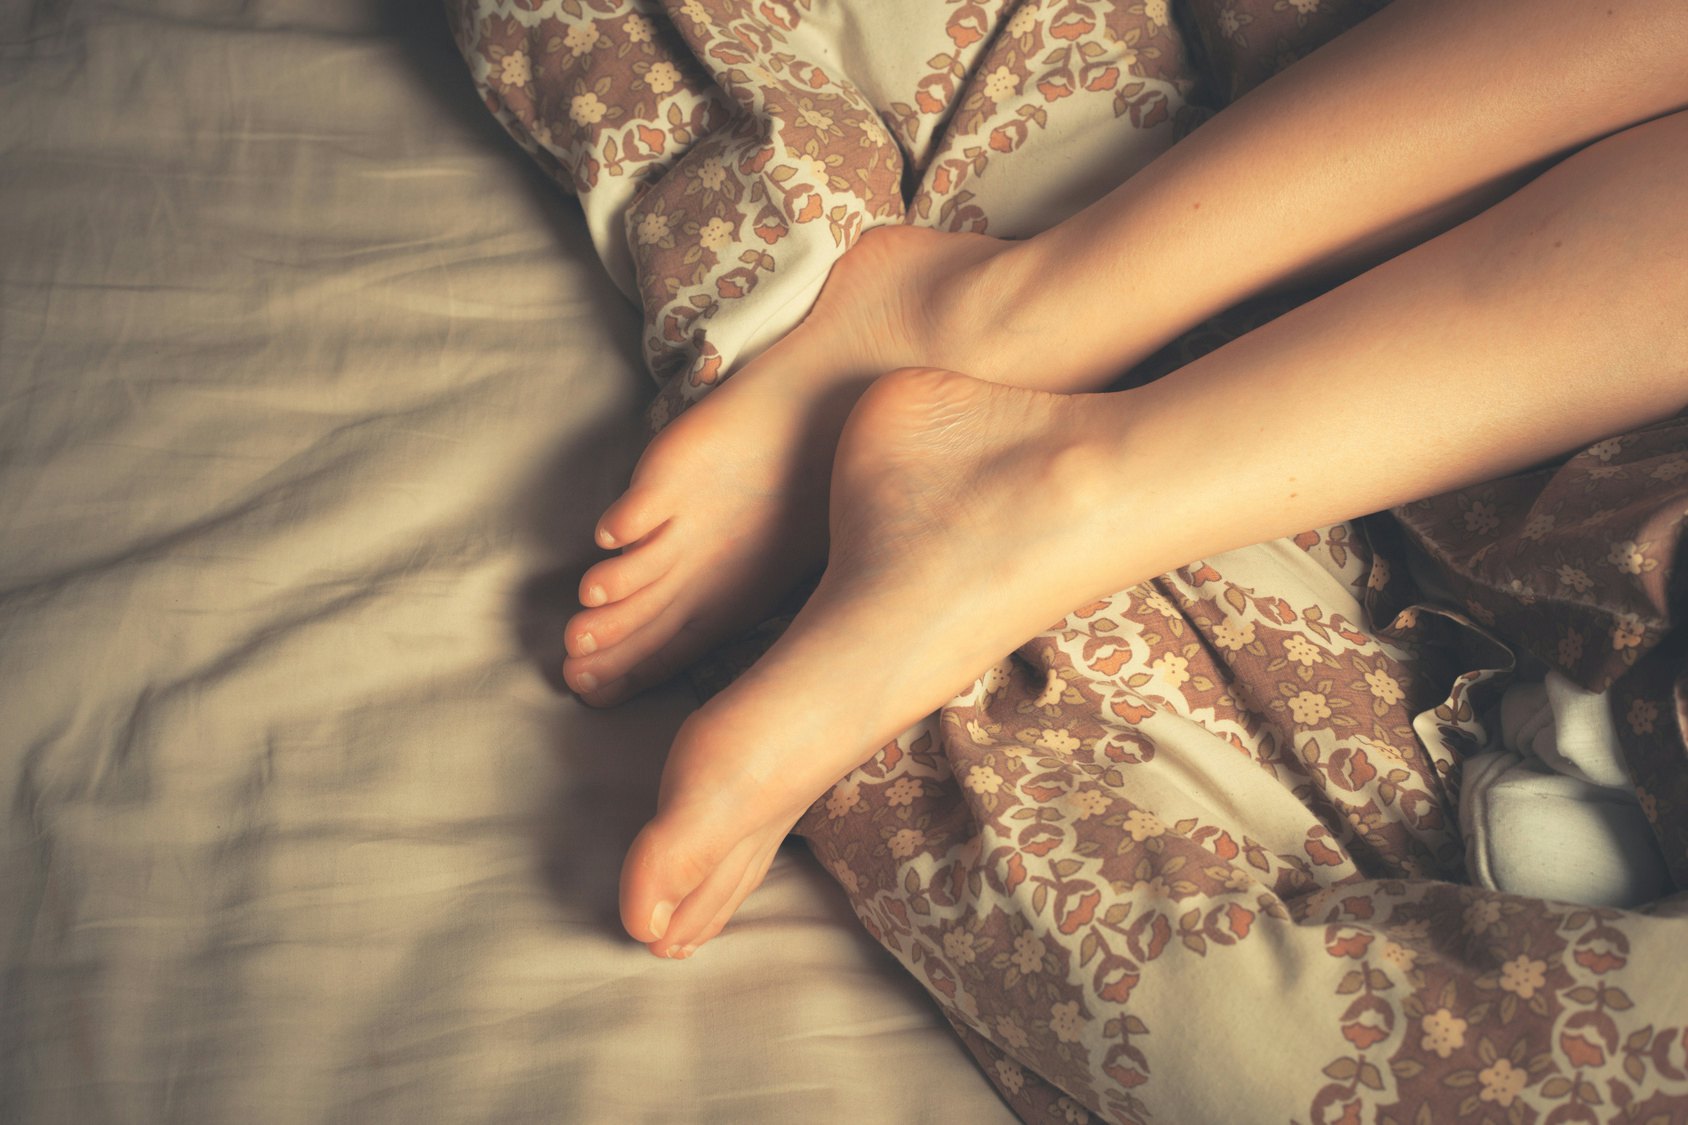 Рыжая бестия в сексуальном белье хвастается попой и ножками в чулках на кровати